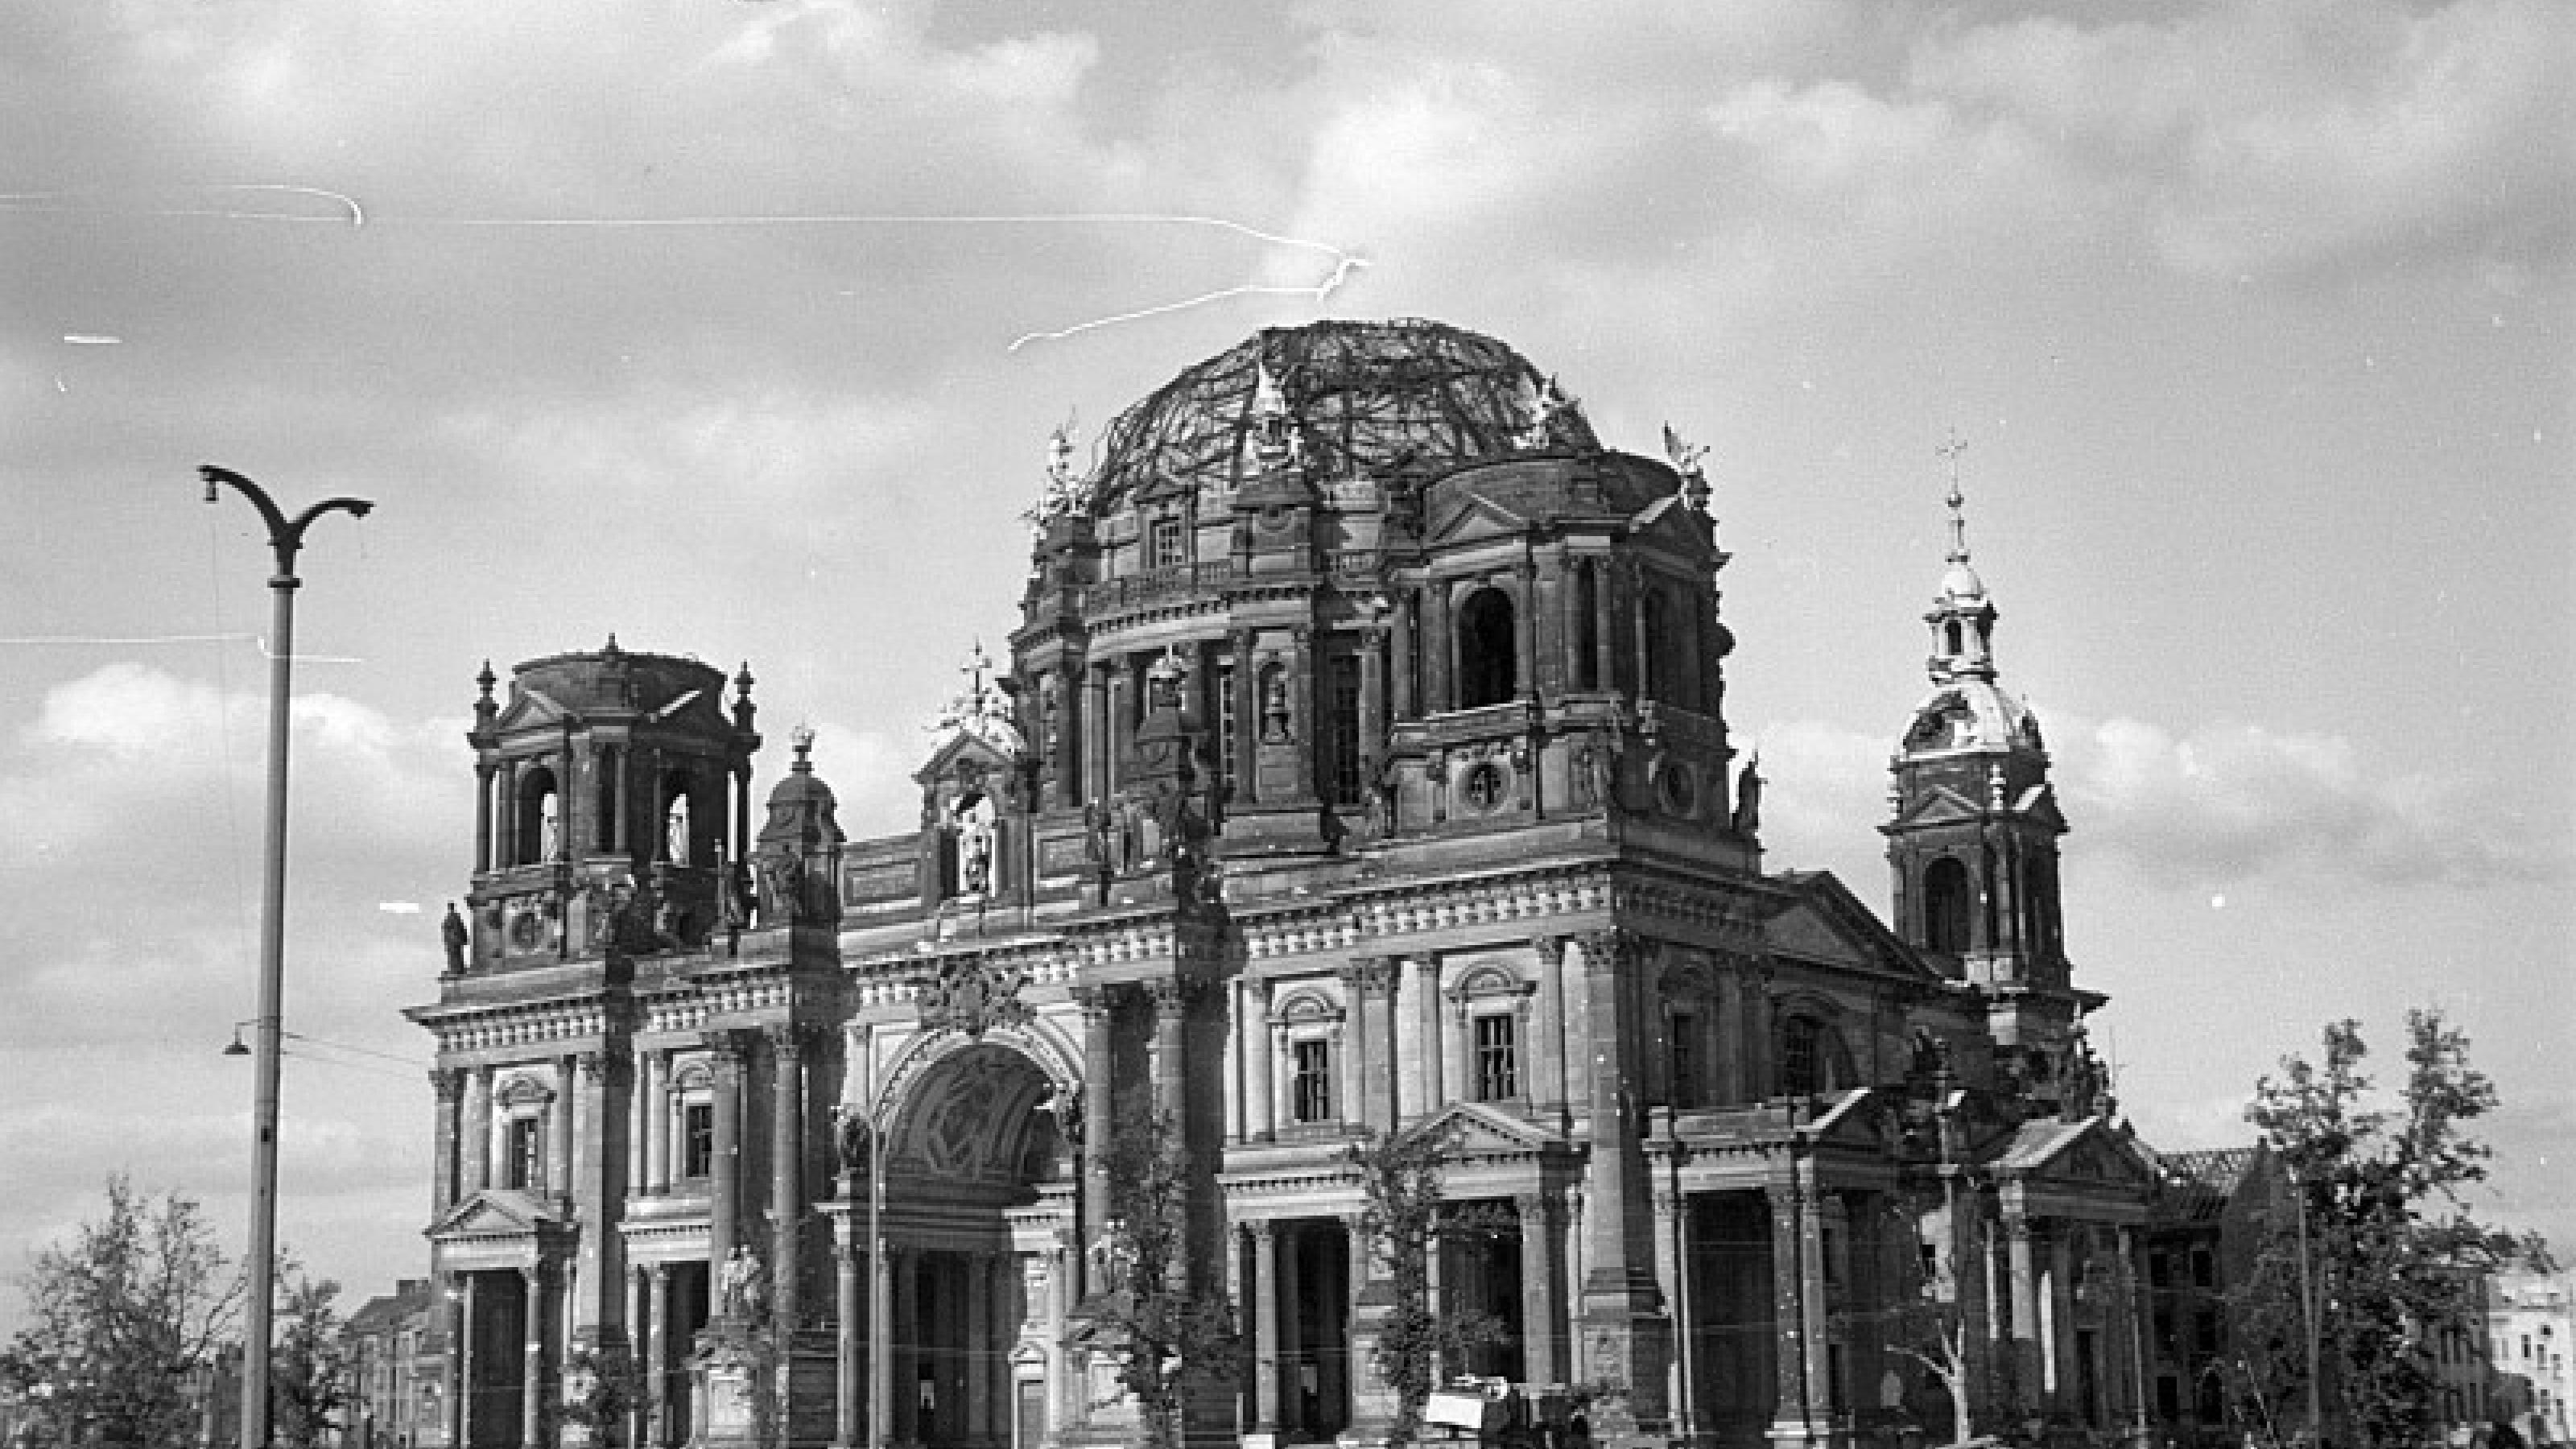 Schwarz-Weiß-Foto des schwer beschädigten Berliner Doms aus dem Jahr 1945.